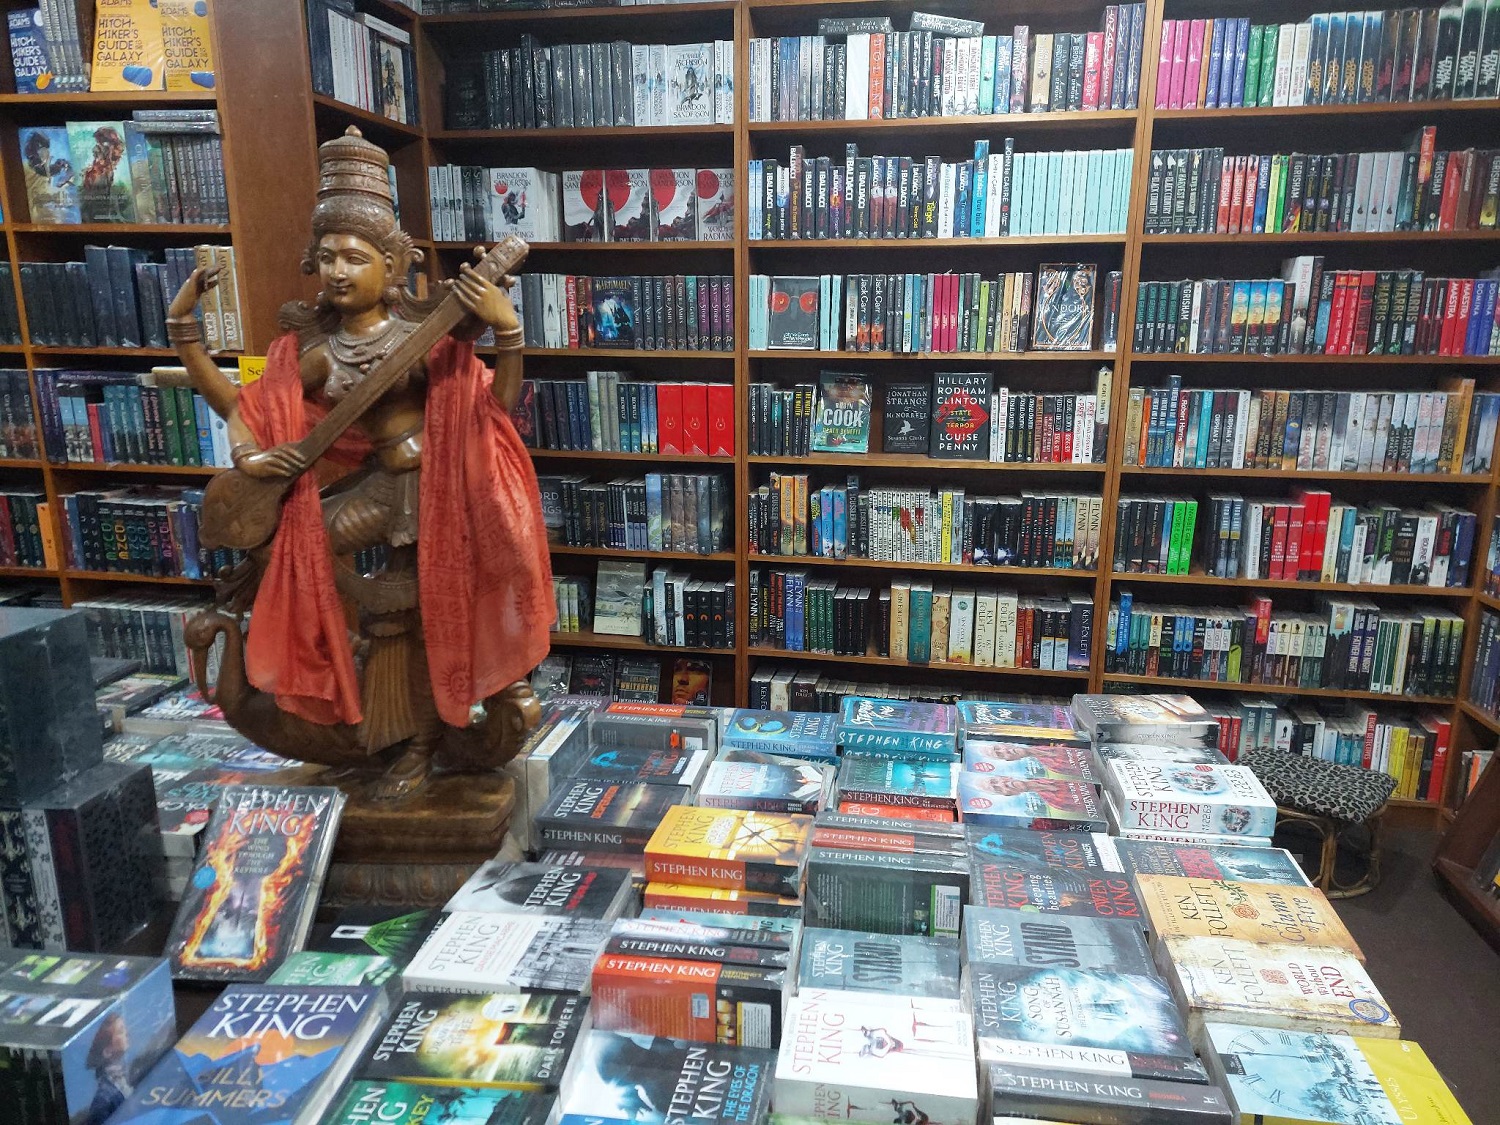 ठमेलमा पुस्तकको व्यापार बढ्दै : ‘फरगेट काठमाडौँ’ पर्यटकको रोजाइमा